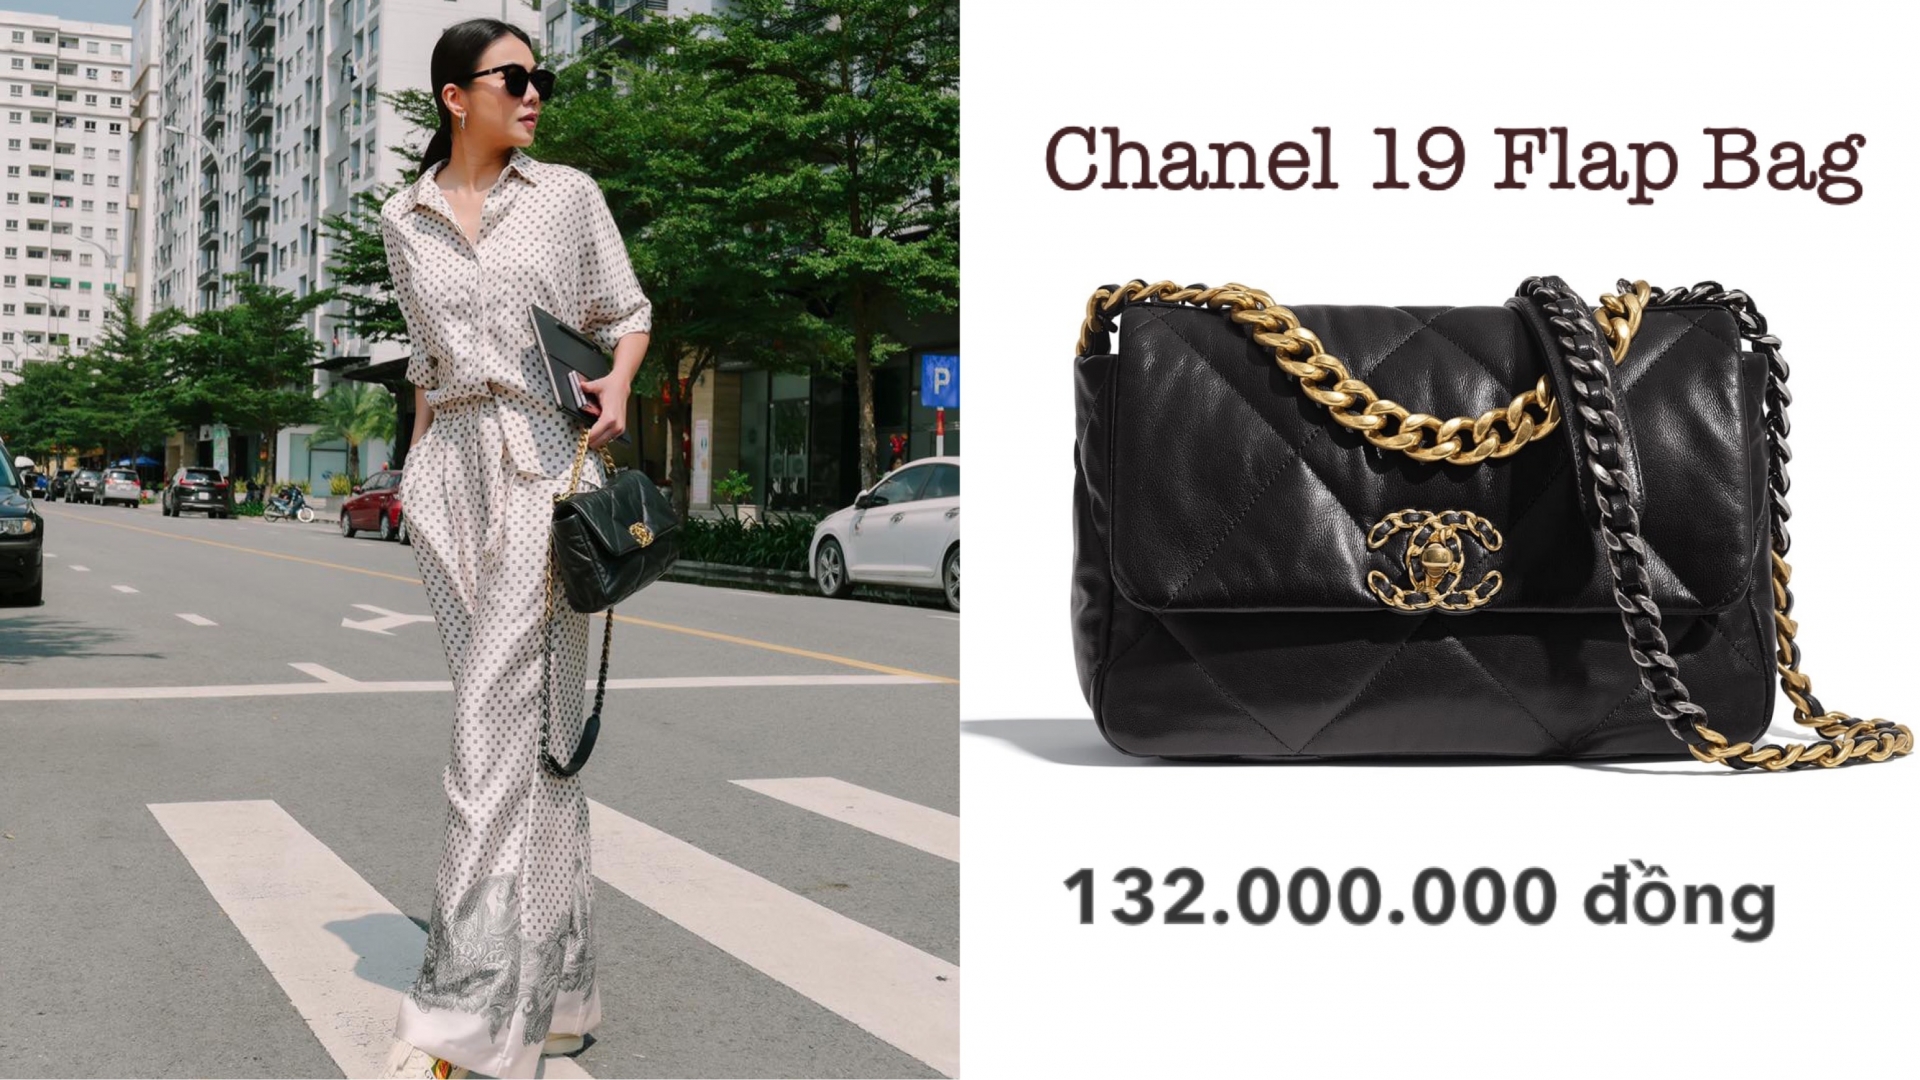 Chiếc túi Chanel 19 Flap Bag là có thiết kế cổ điển, dễ mix and match nên được Thanh Hằng kết hợp với nhiều outfit khác nhau.